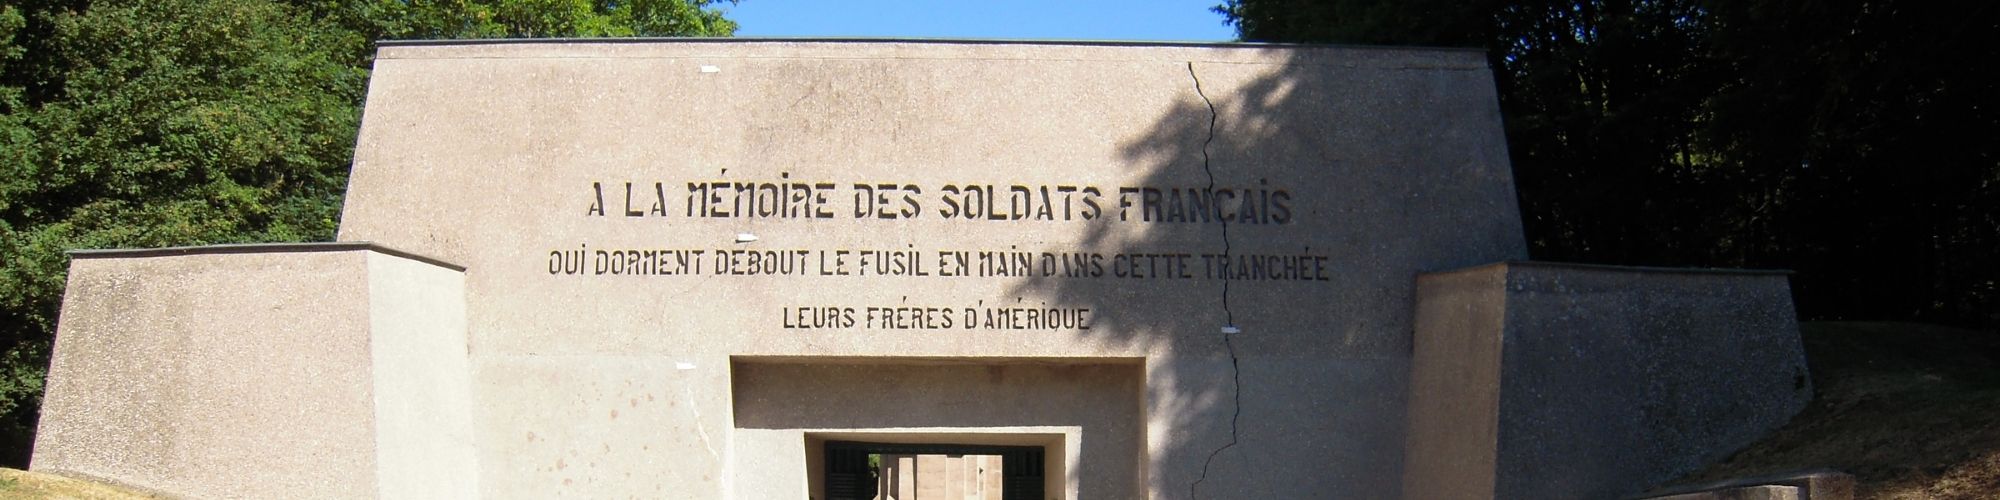 Écriteau "À la mémoire des soldats français".